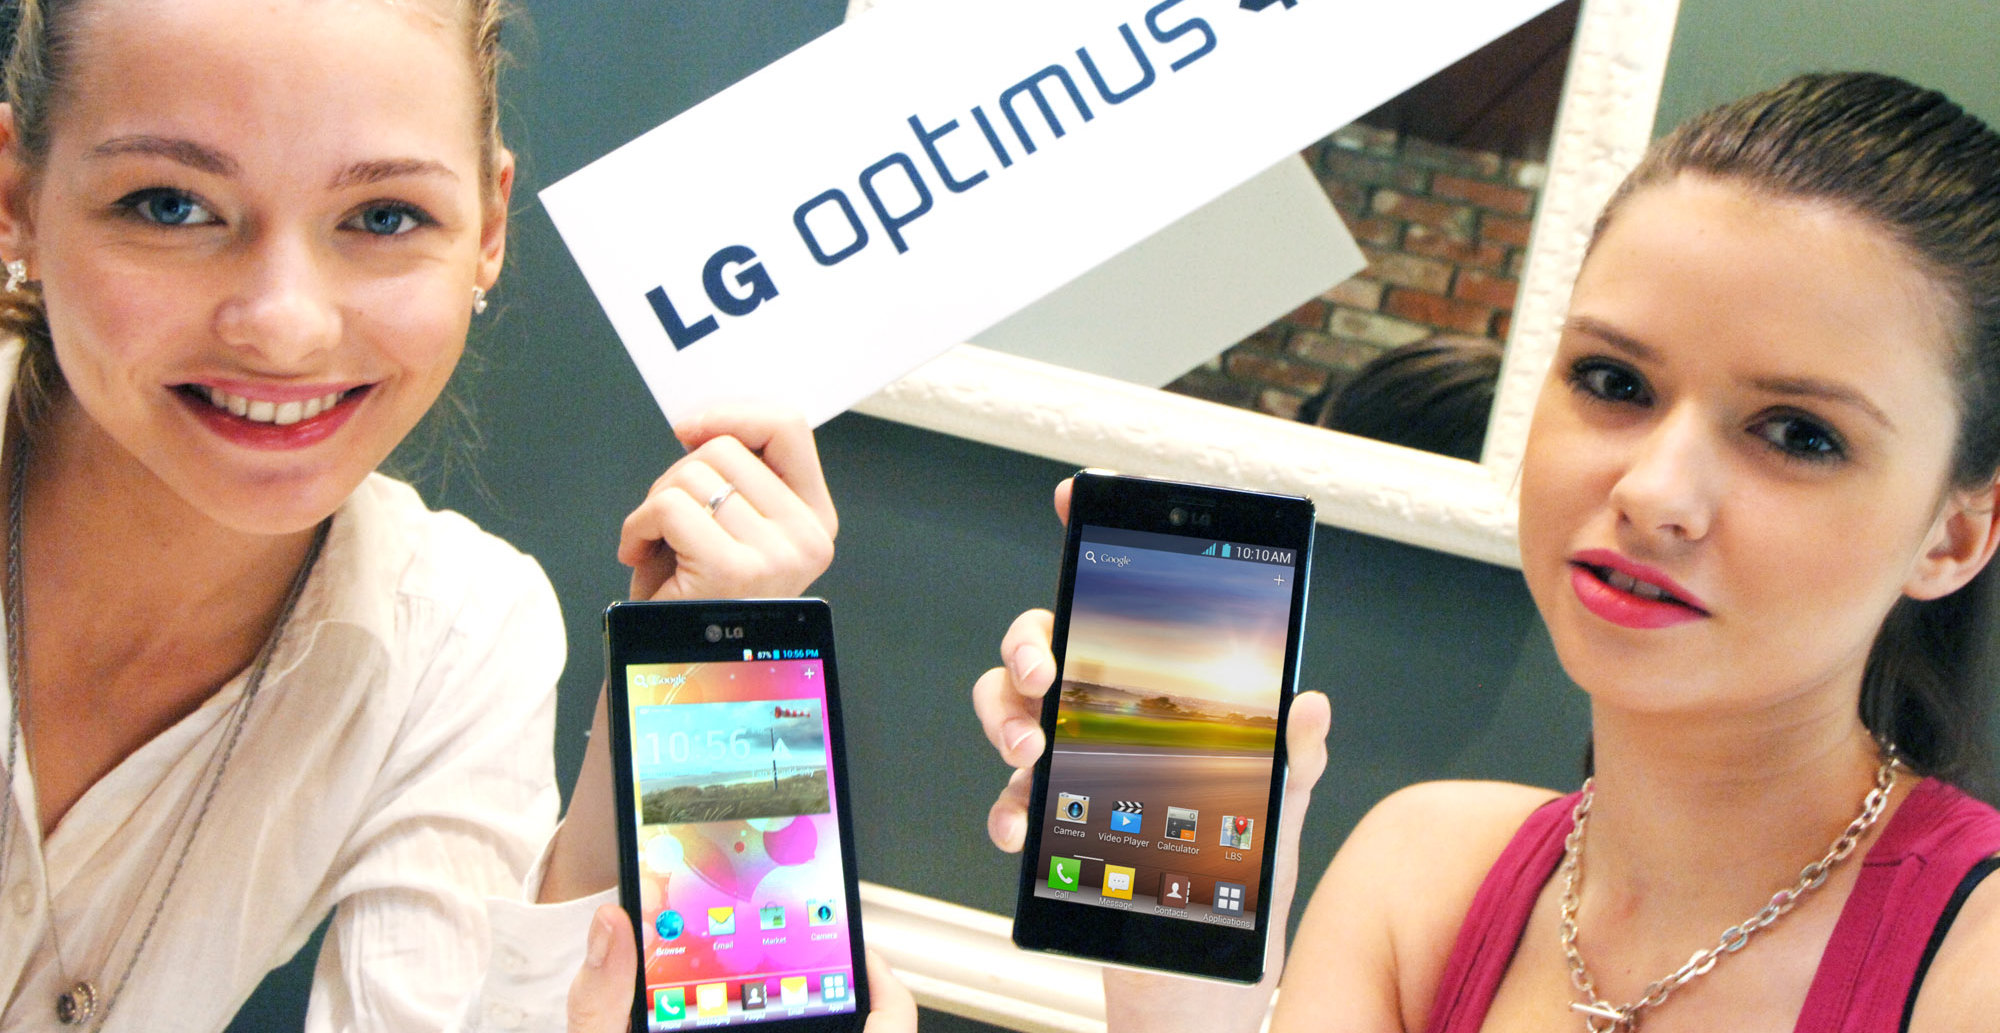 Optimus 4X er den hittil råeste mobilen fra LG, men noe enda bedre skal være på vei.